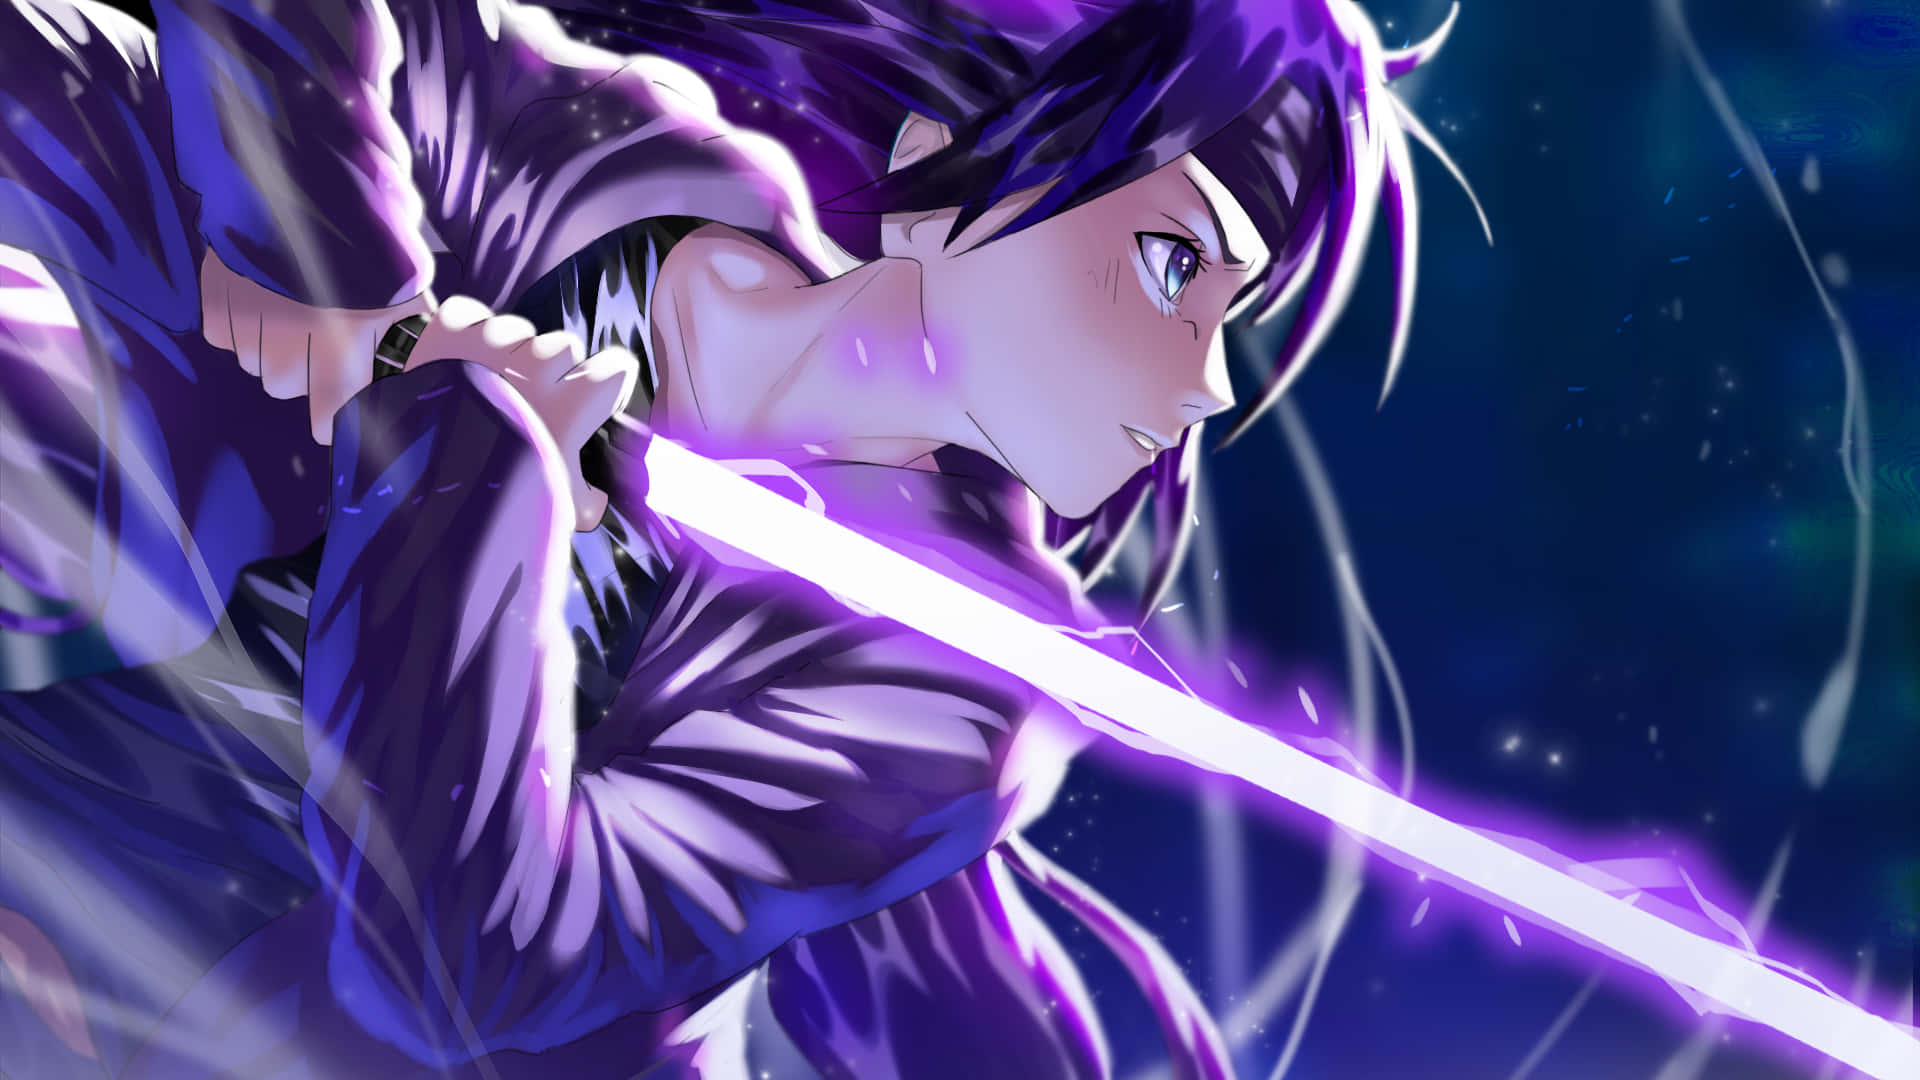 A Deeply Emotional Purple Anime Scene Wallpaper